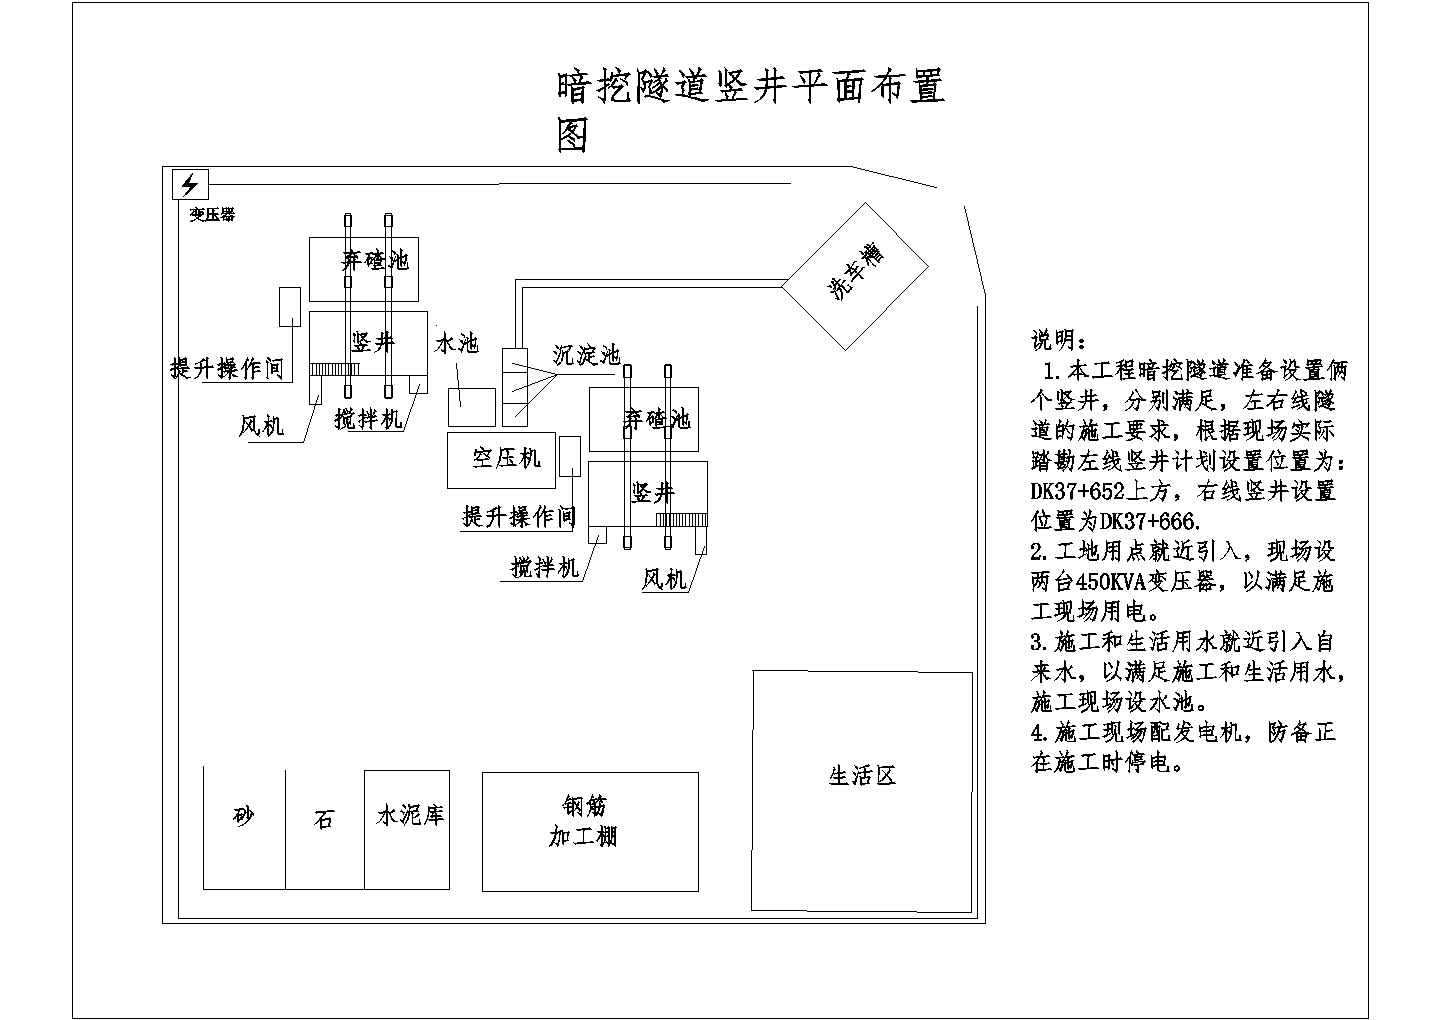 莞惠城际轨道交通工程某标段实施性施工组织设计